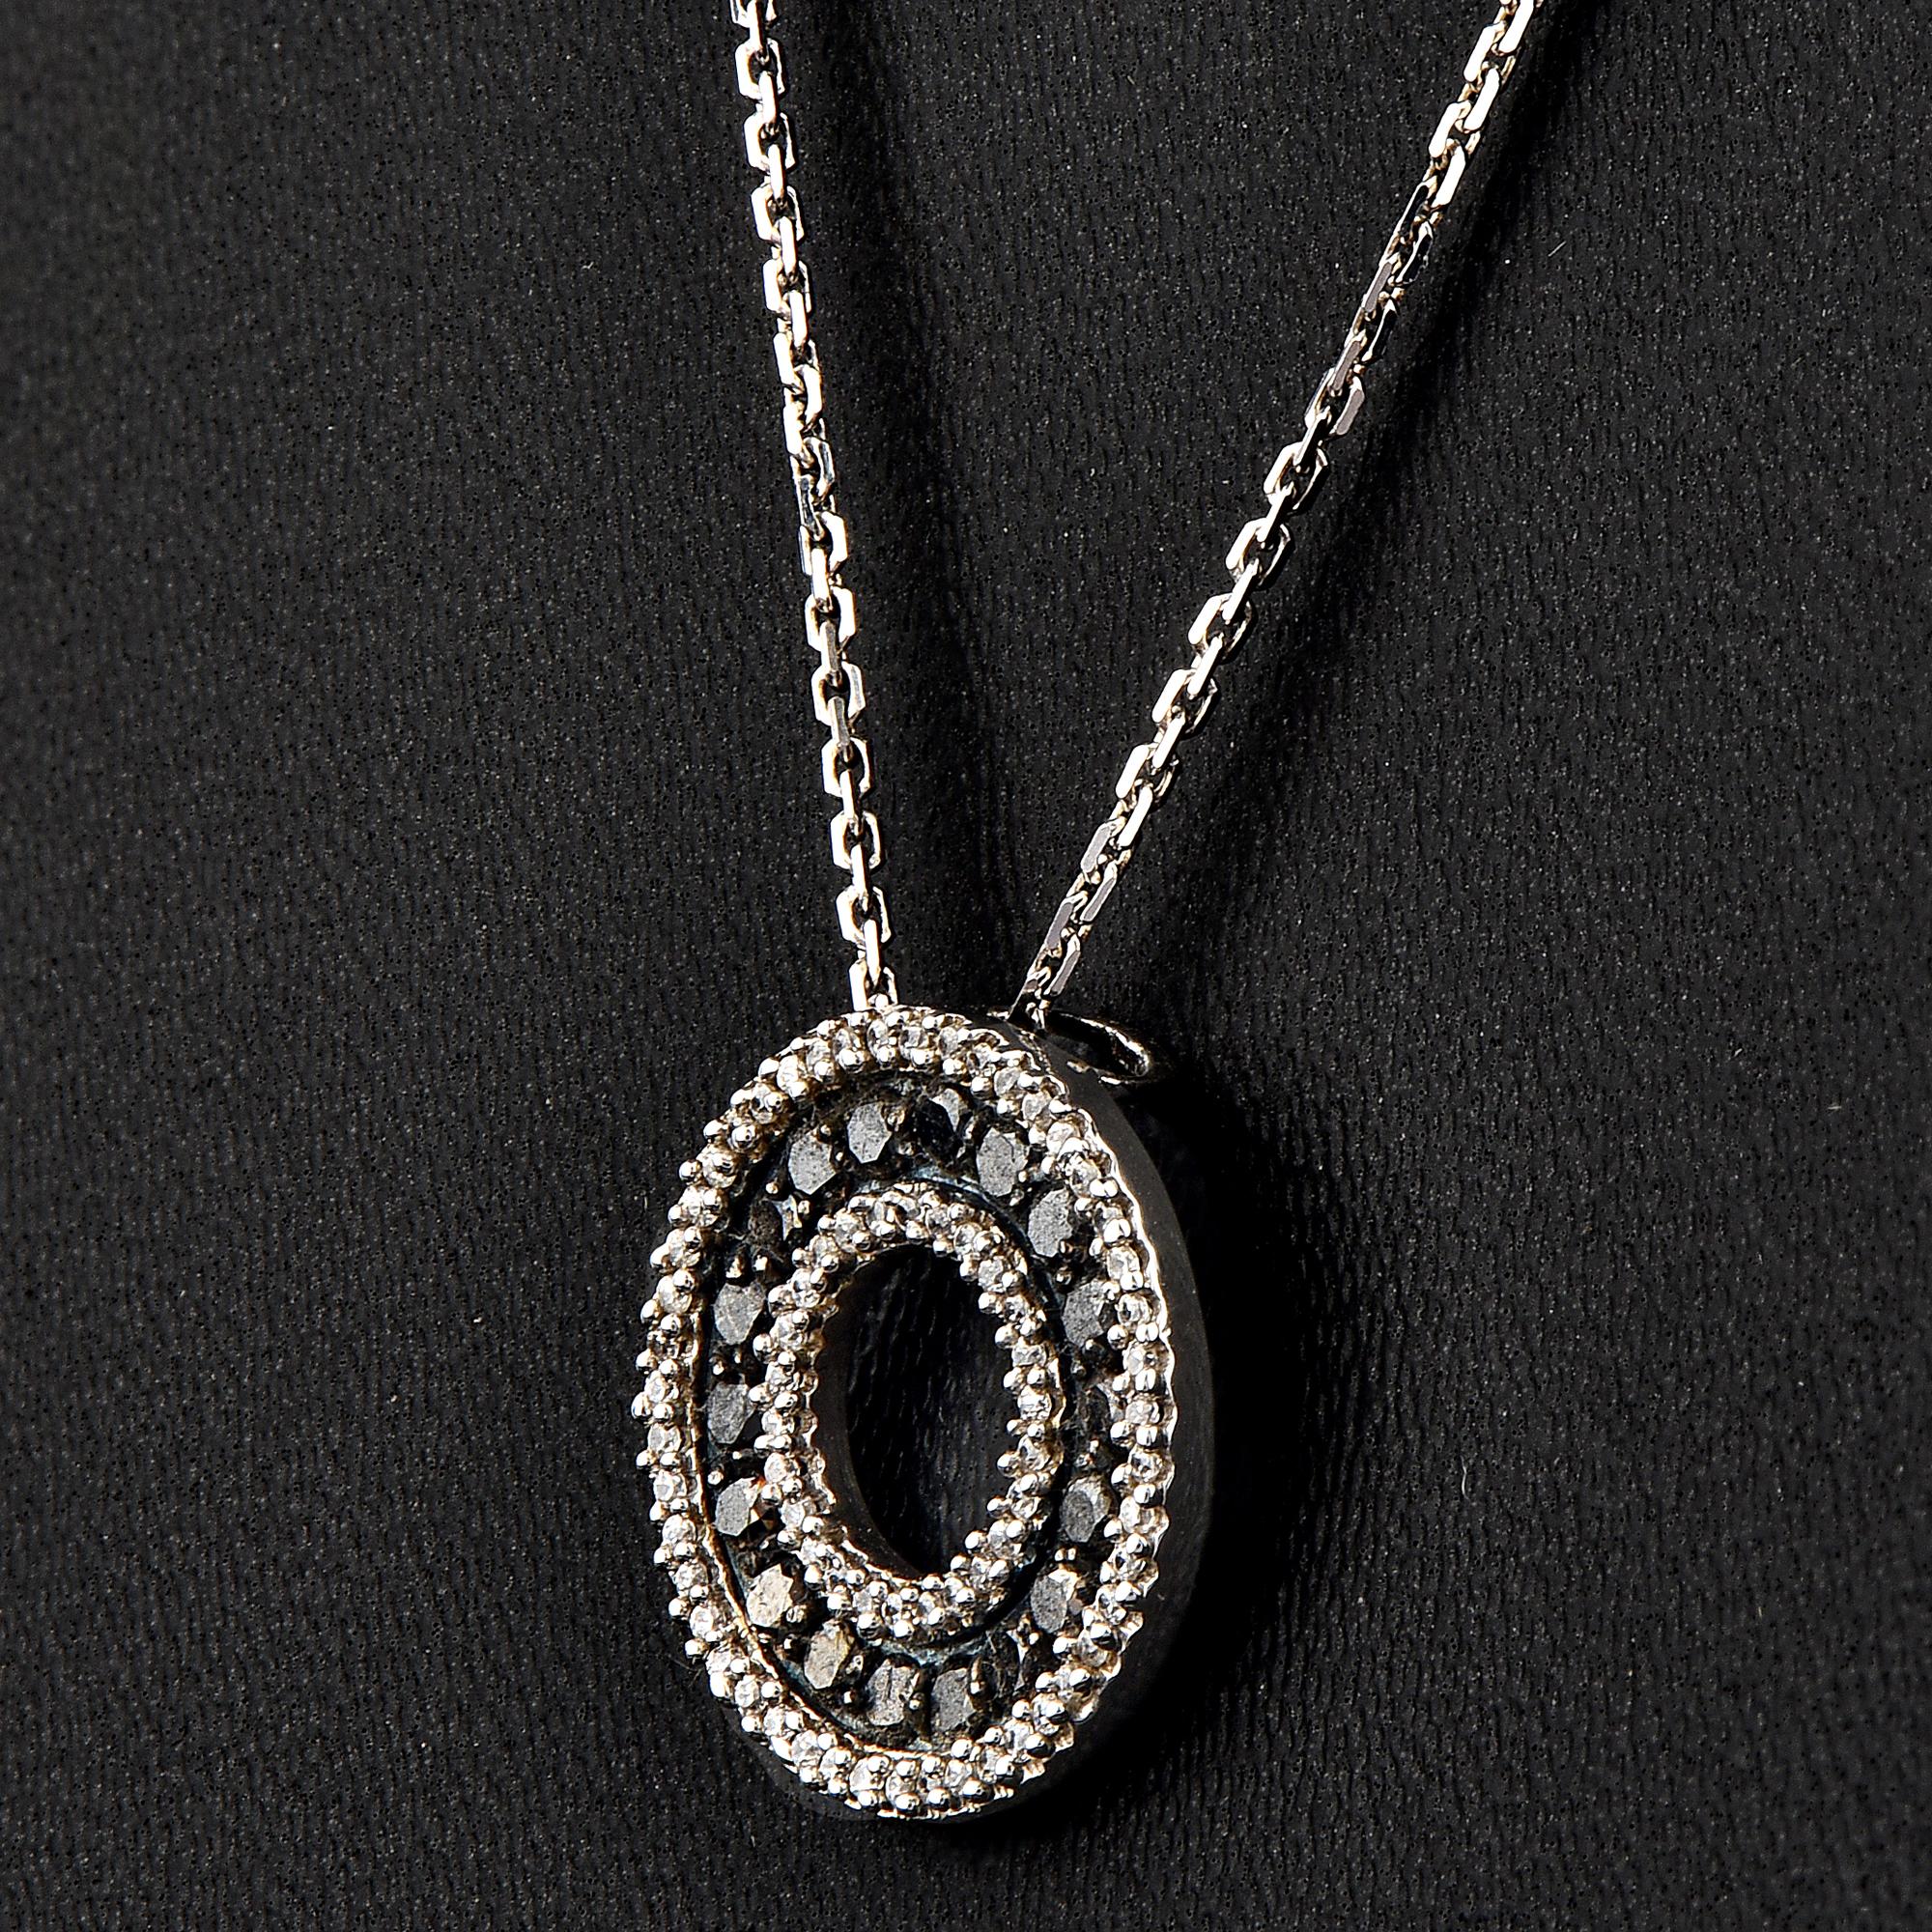 Ce pendentif en diamant est un ajout saisissant lorsqu'il est porté seul. Il fait une impression étonnante. Le pendentif est en or 14 carats, blanc, rose ou jaune au choix, et comporte 73 diamants blancs et 18 diamants noirs sertis en micro-pinces,